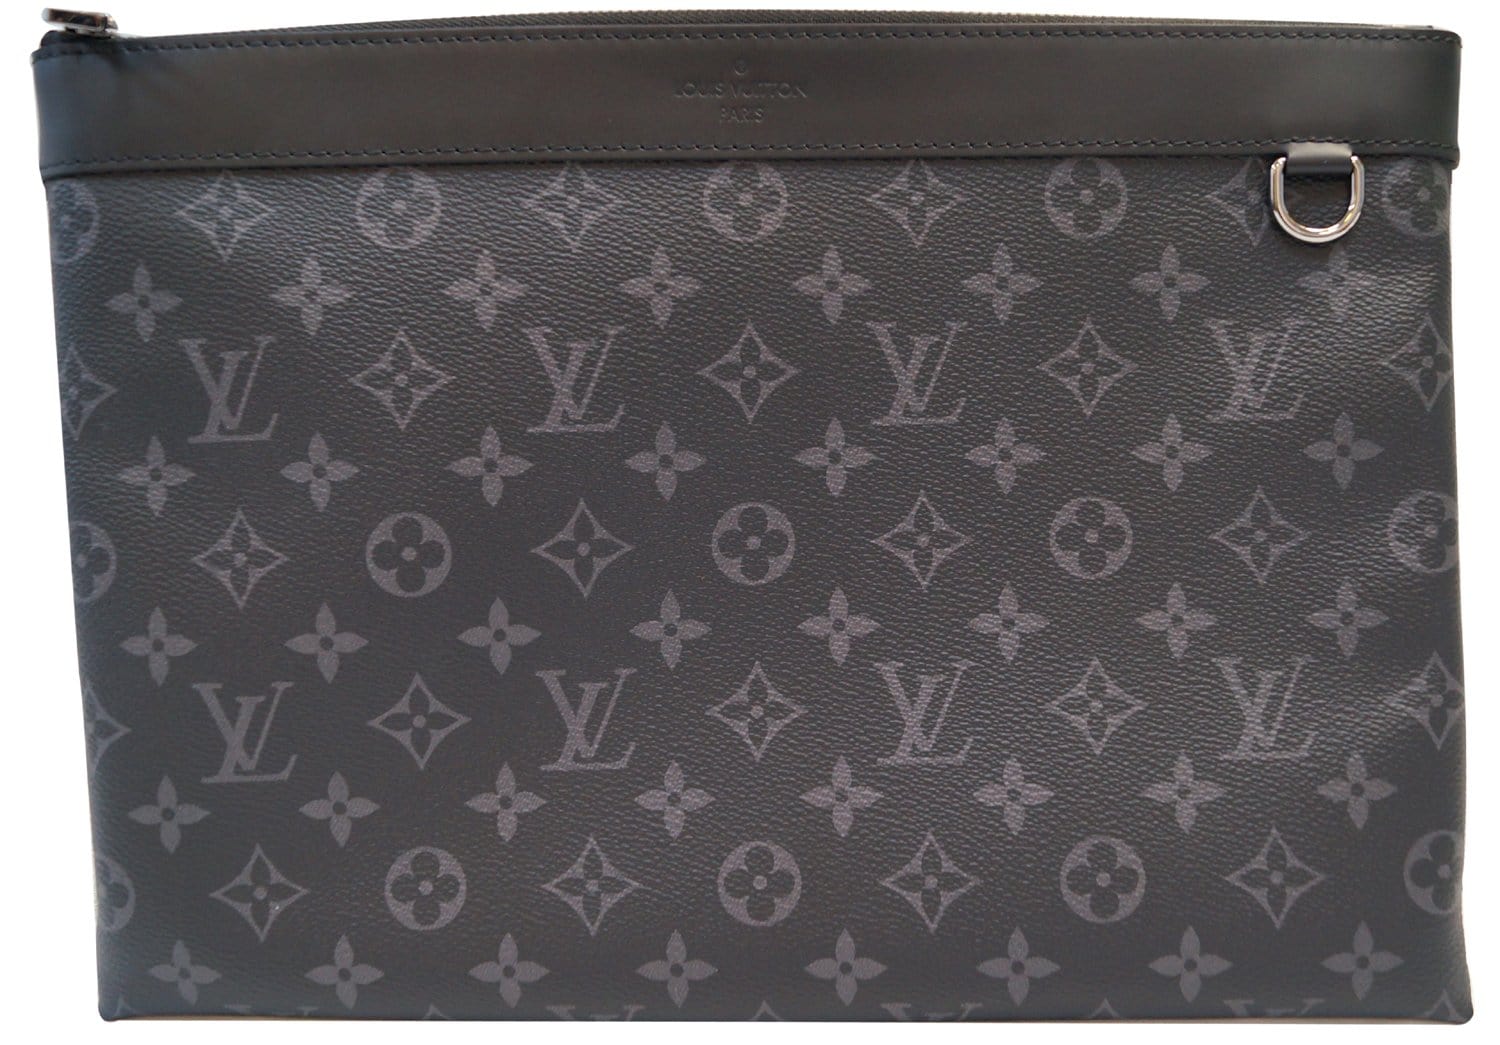 Louis Vuitton Pochette Apollo bag 